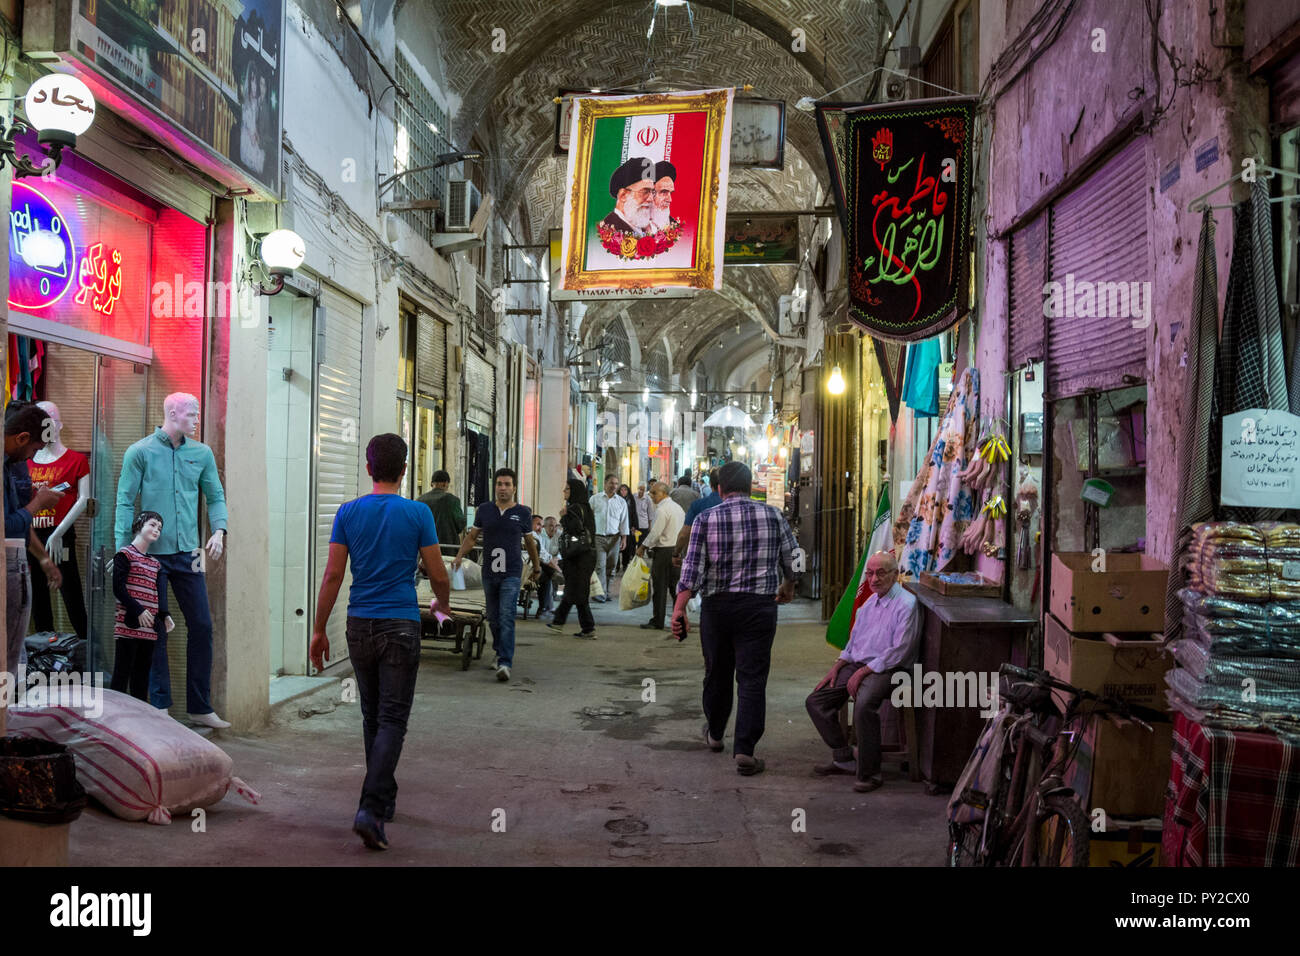 ISFAHAN, IRAN - 20 agosto 2018: Street di Isfahan bazar con una bandiera iraniana appeso con i ritratti dei 2 leader supremo della islamico R Foto Stock